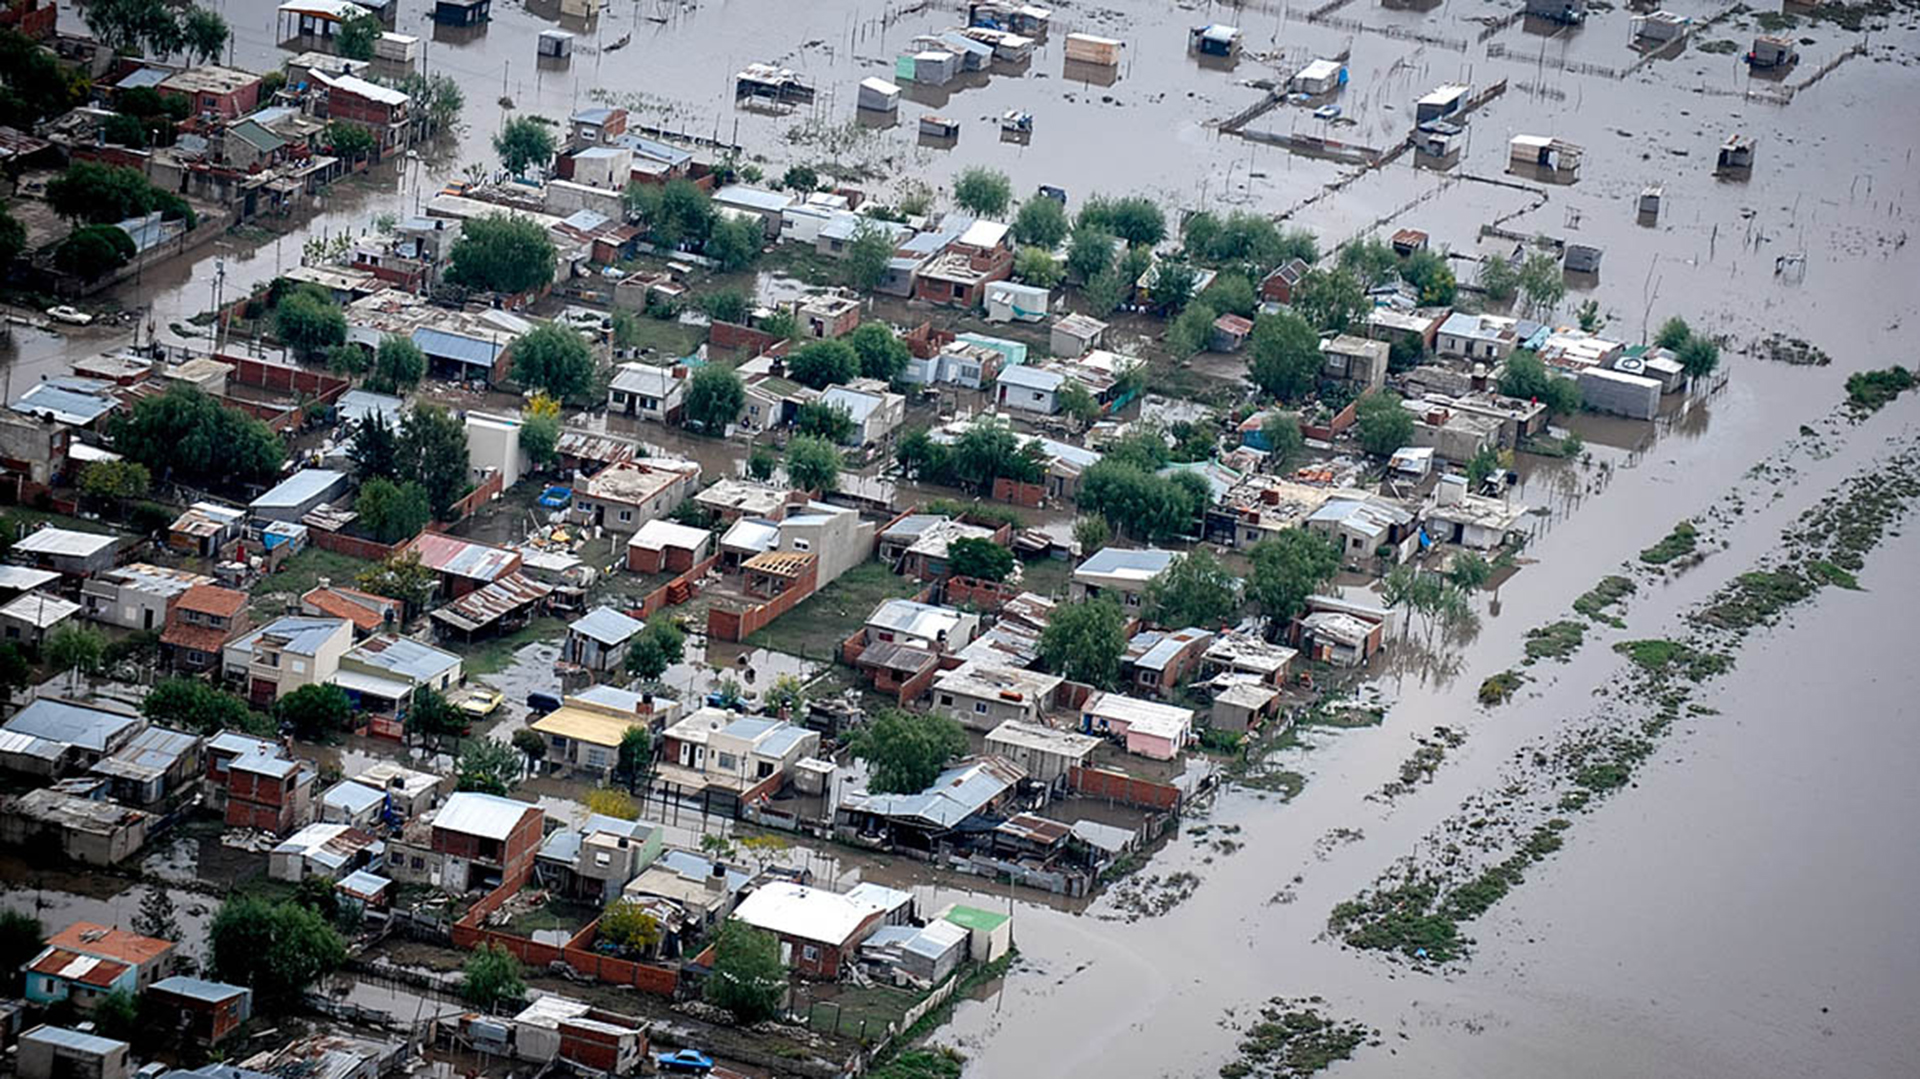 Se calcula que el día de la inundación platense llovió entre 181 y 200 milímetros en tres horas, lo que provocó el desborde del arroyo El Gato  (Charly Díaz Azcué)